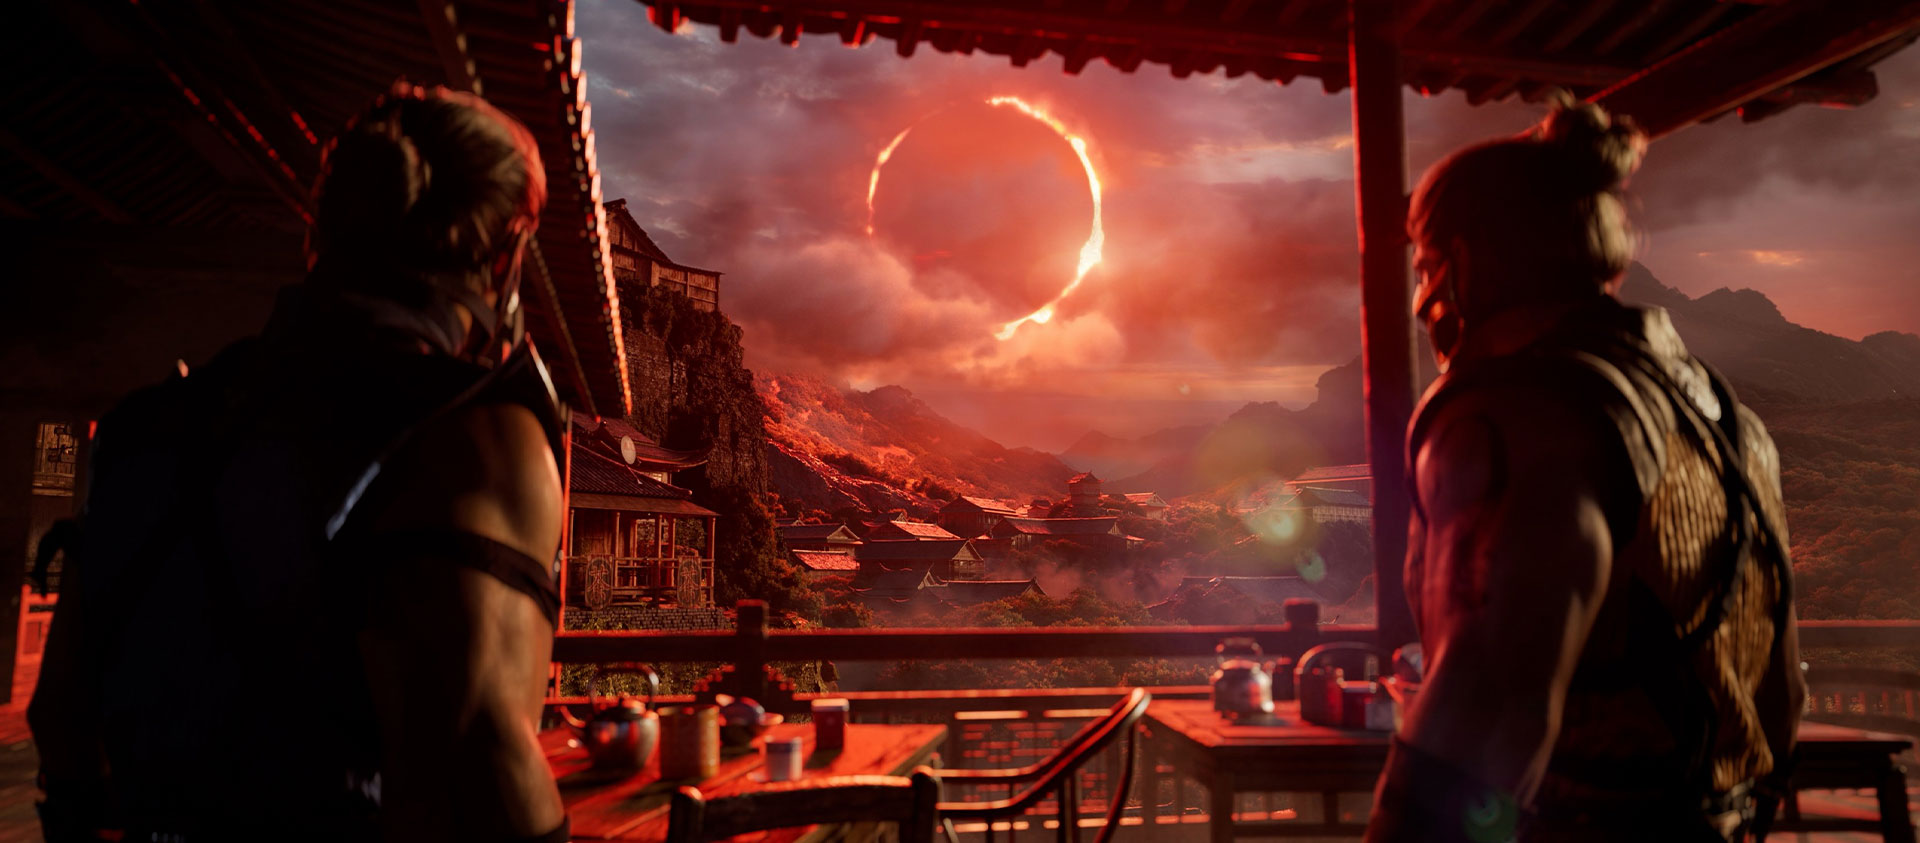 Mortal Kombat 1, δύο χαρακτήρες κάτω από ένα υπόστεγο κοιτάζουν την κόκκινη ηλιακή έκλειψη στο βάθος